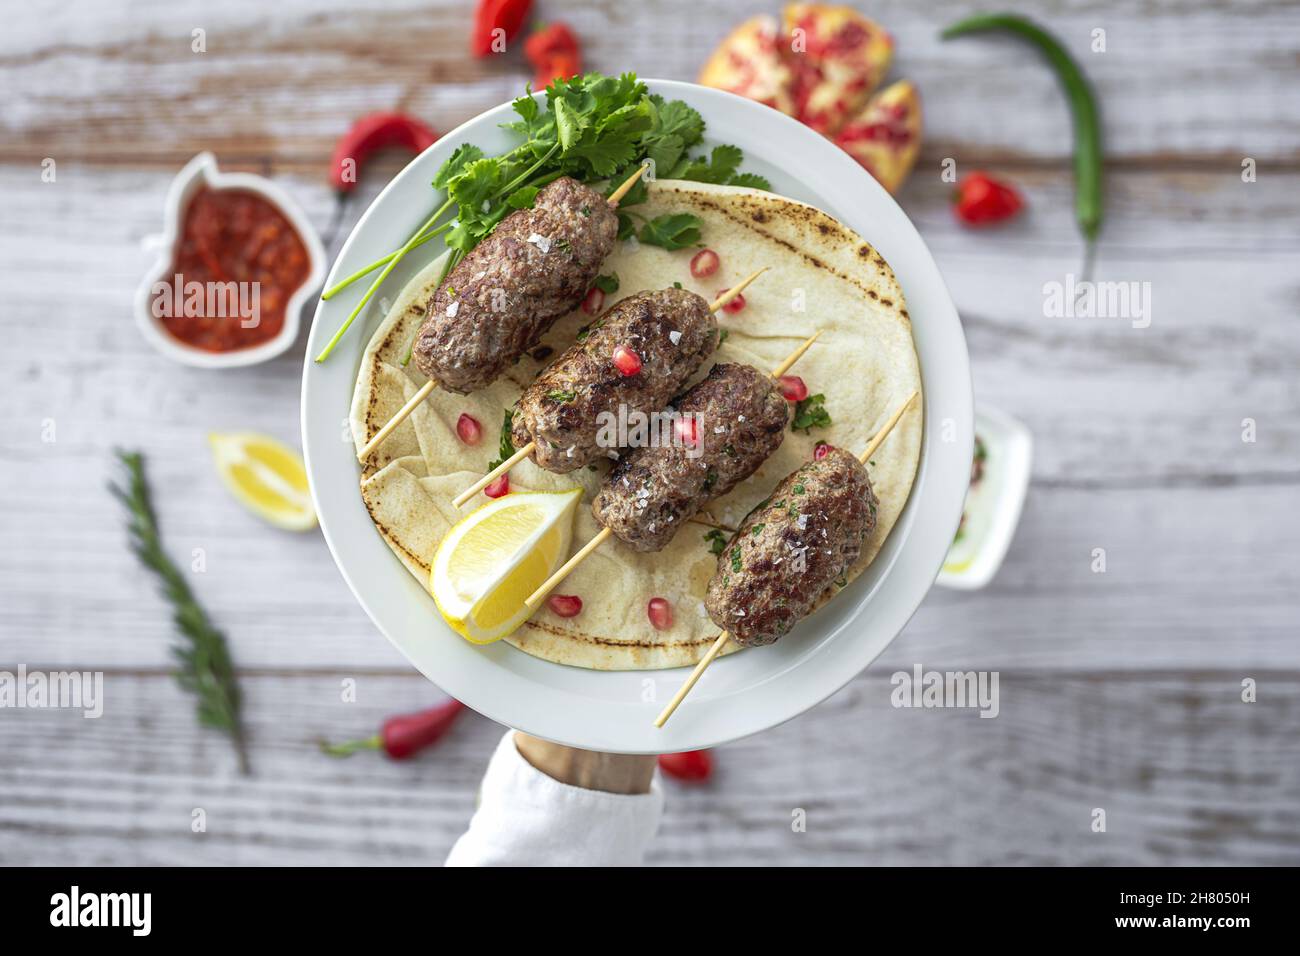 Tradizionale kafta fatto in casa o kofta kebab di manzo e agnello con salsa di pomodoro e yogurt. Cucina tradizionale araba e turca. Halal cibo Foto Stock